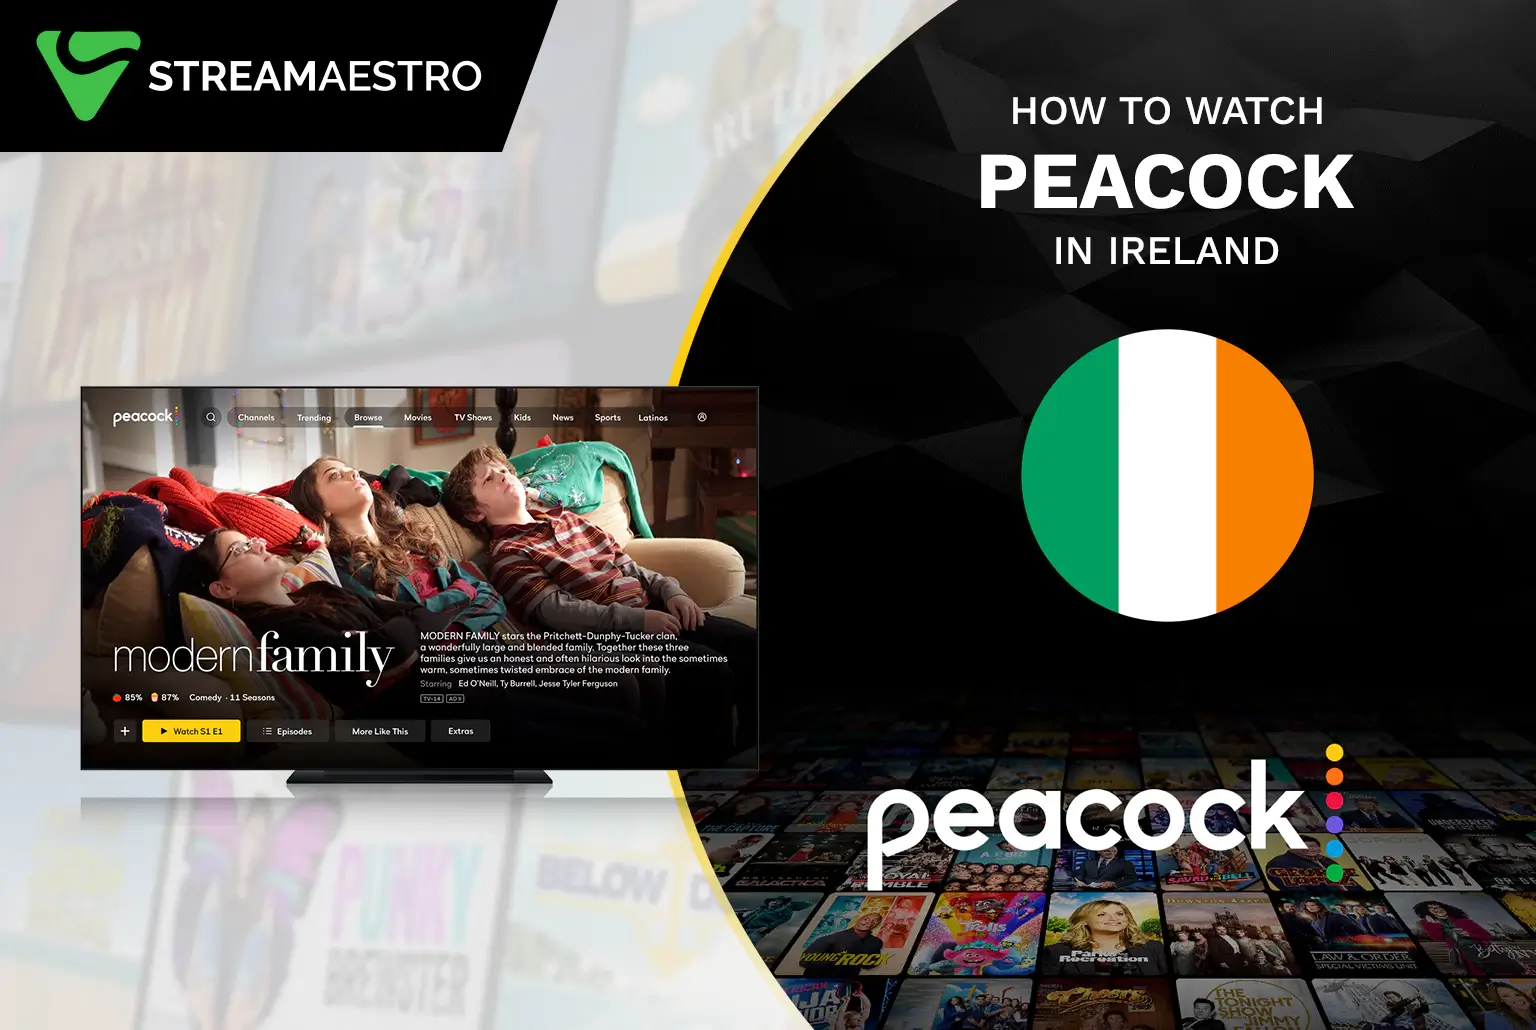 Peacock TV in ireland